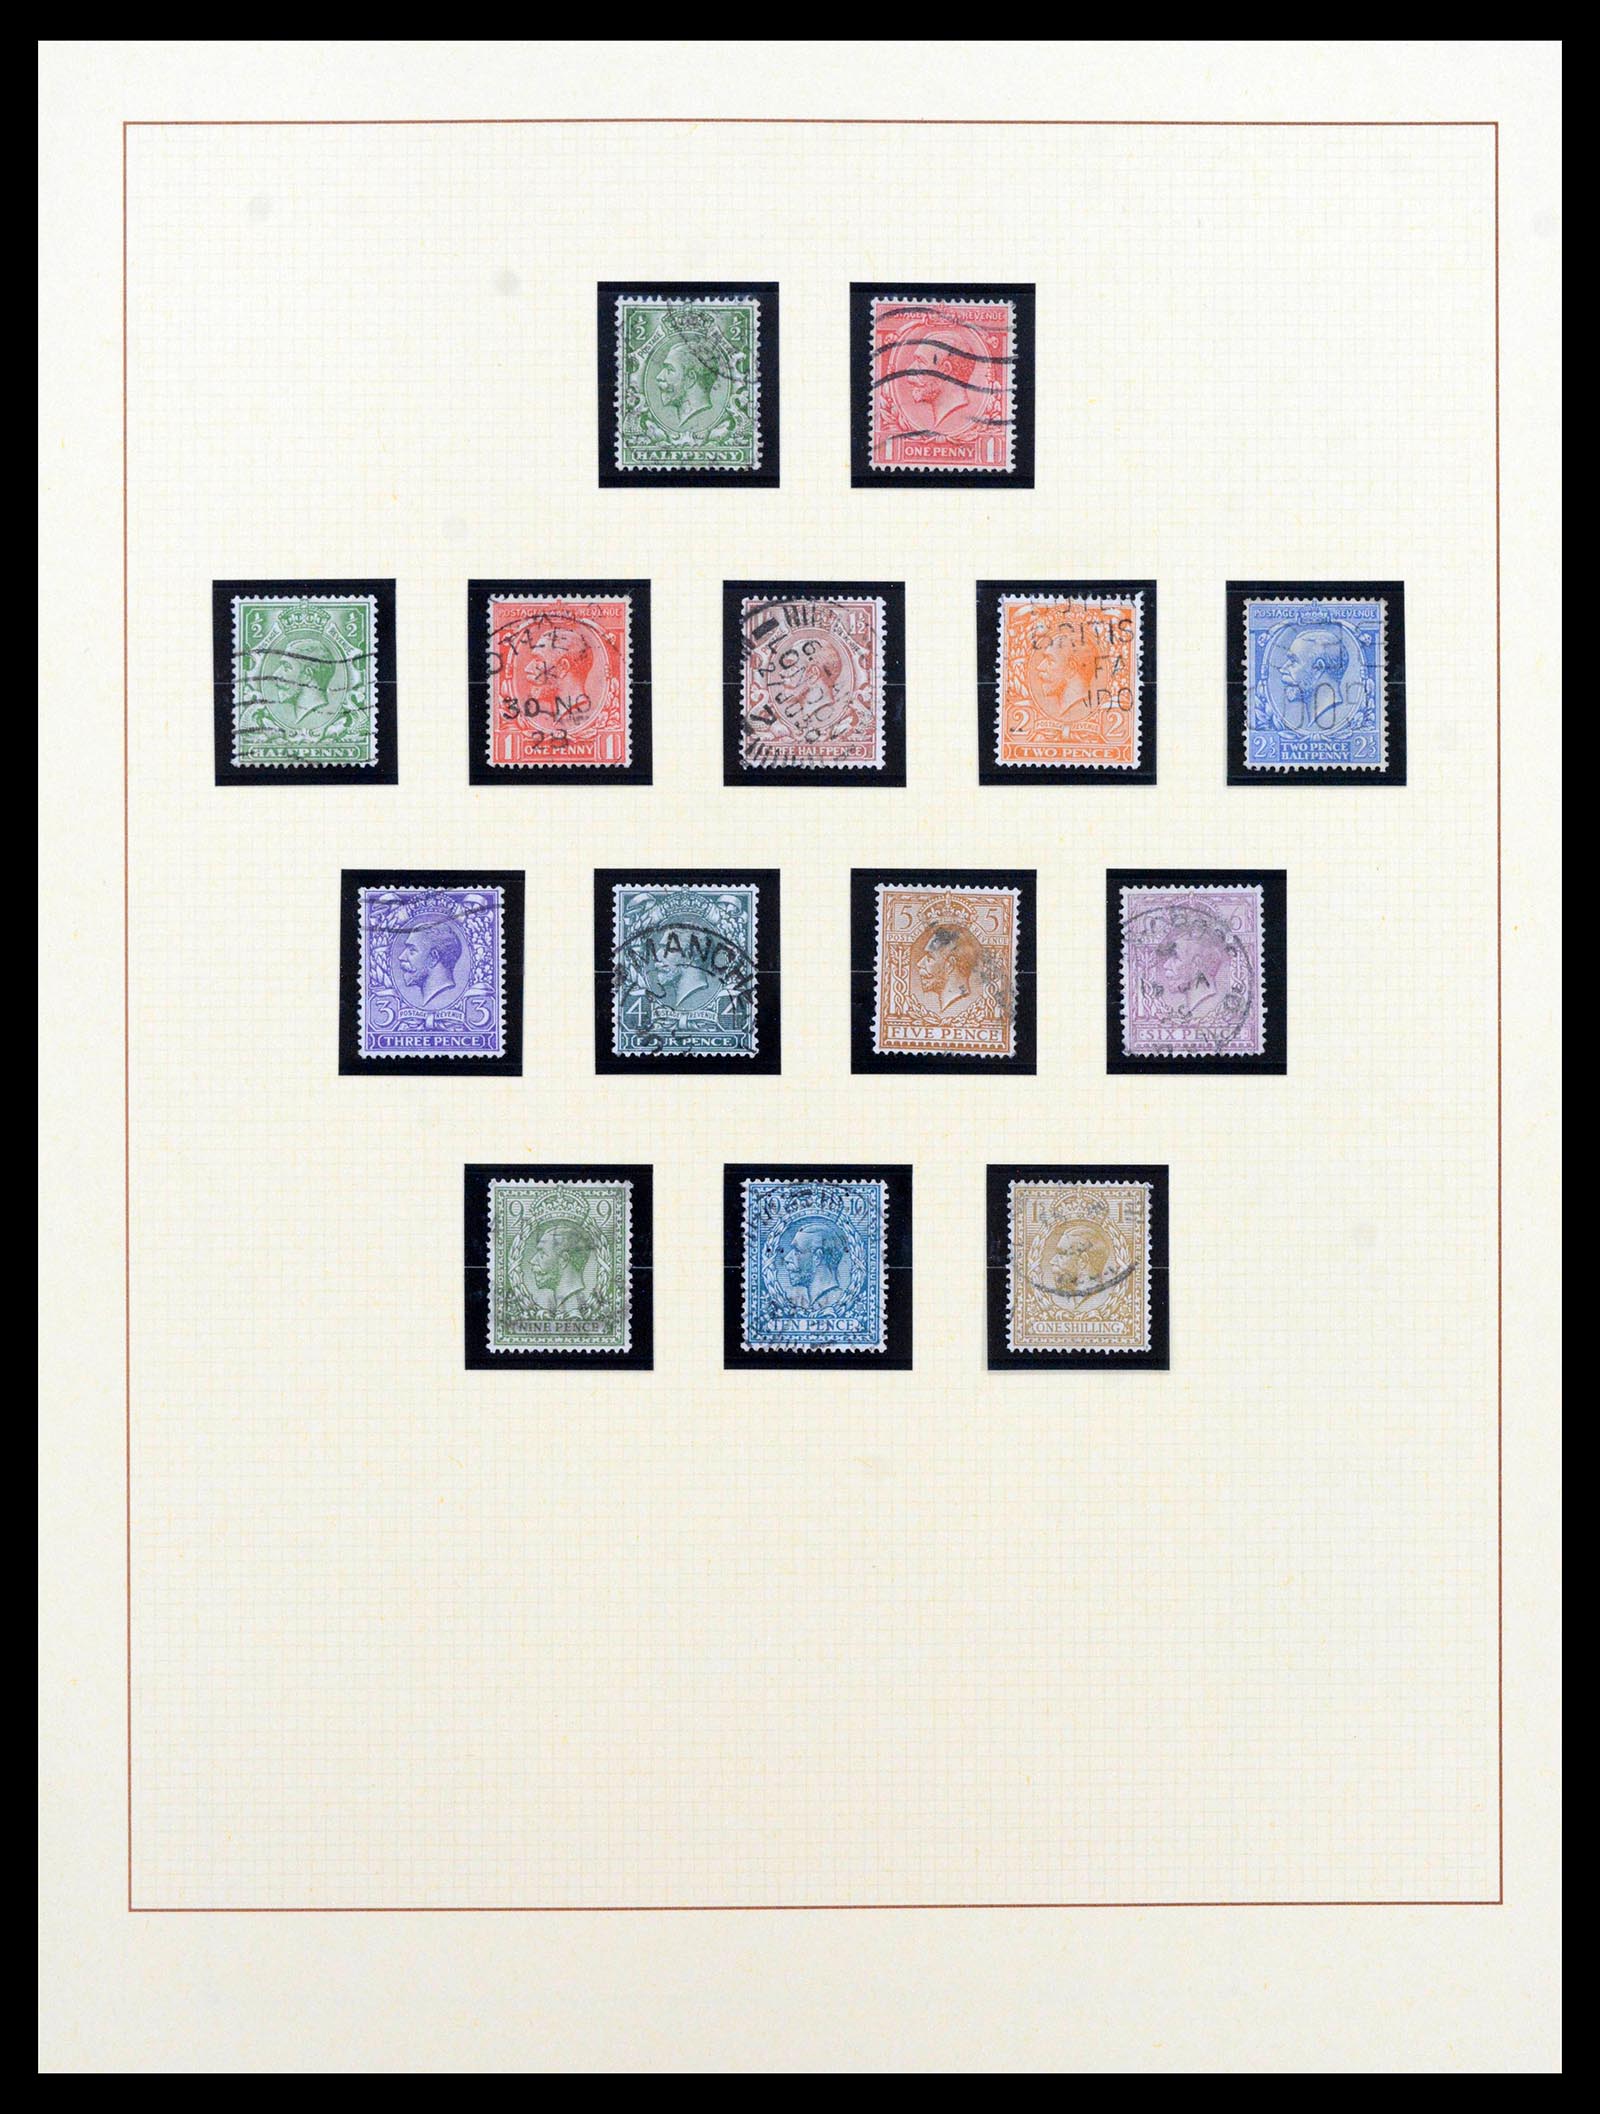 39375 0032 - Postzegelverzameling 39375 Engeland topverzameling 1840-1980.